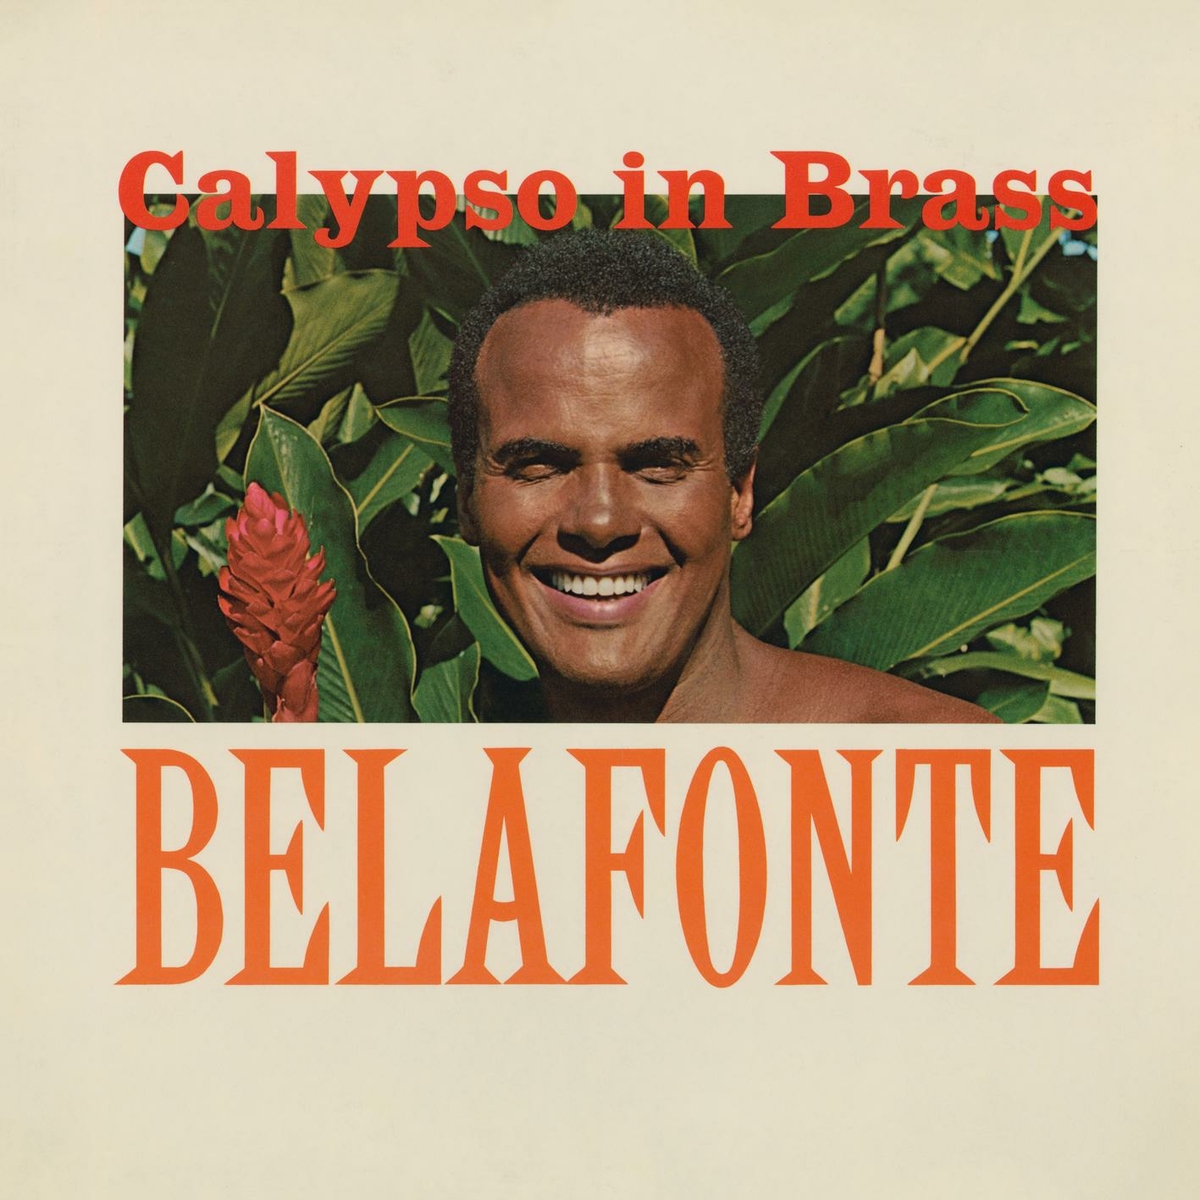 Harry Belafonte - Calypso in Brass